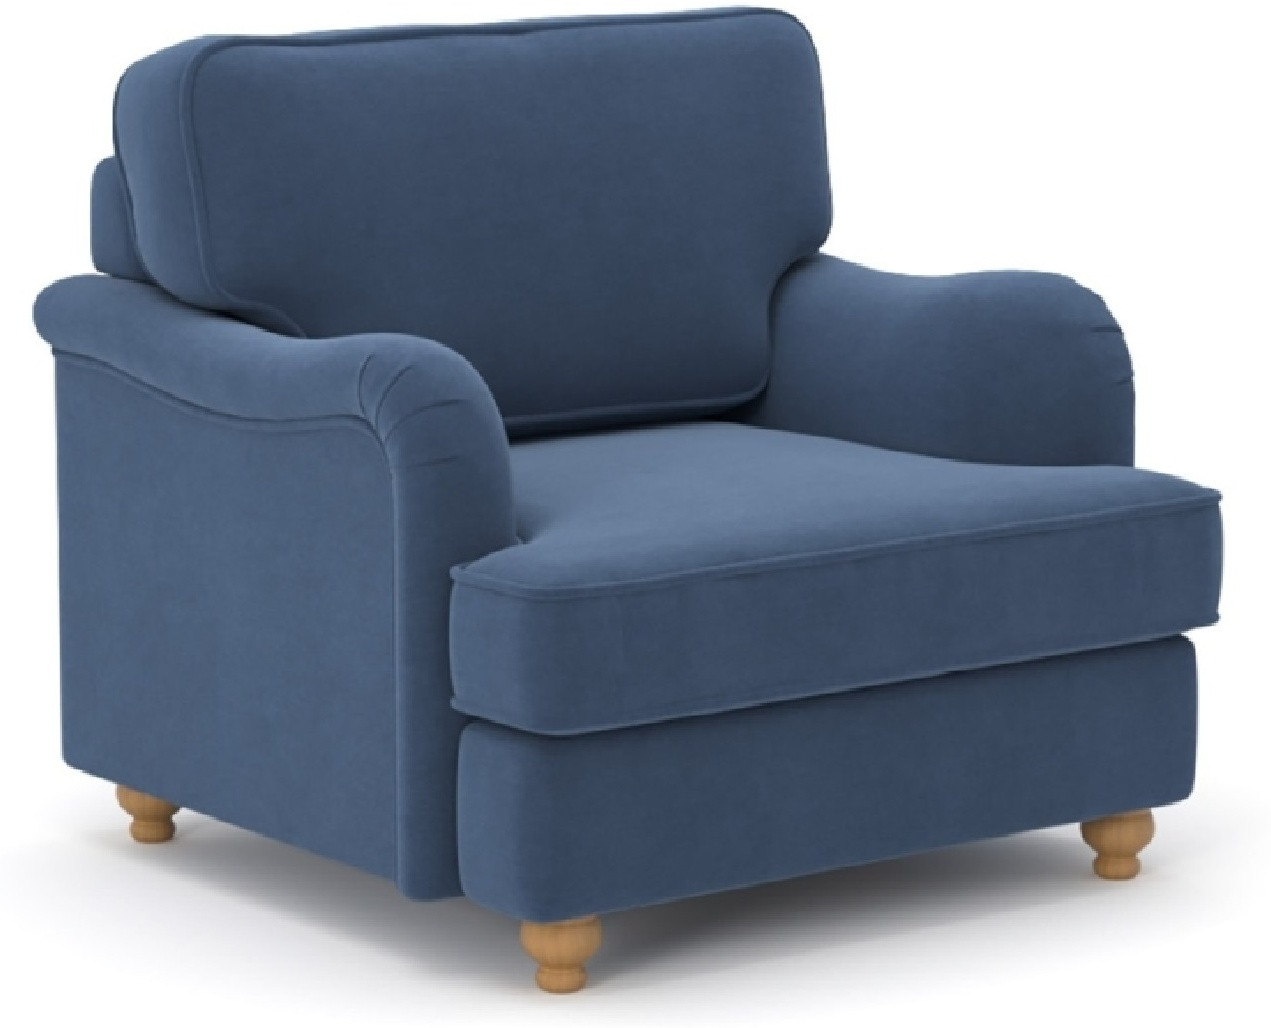 Hoffmann классическое кресло, обивка ткань Orson blue 128